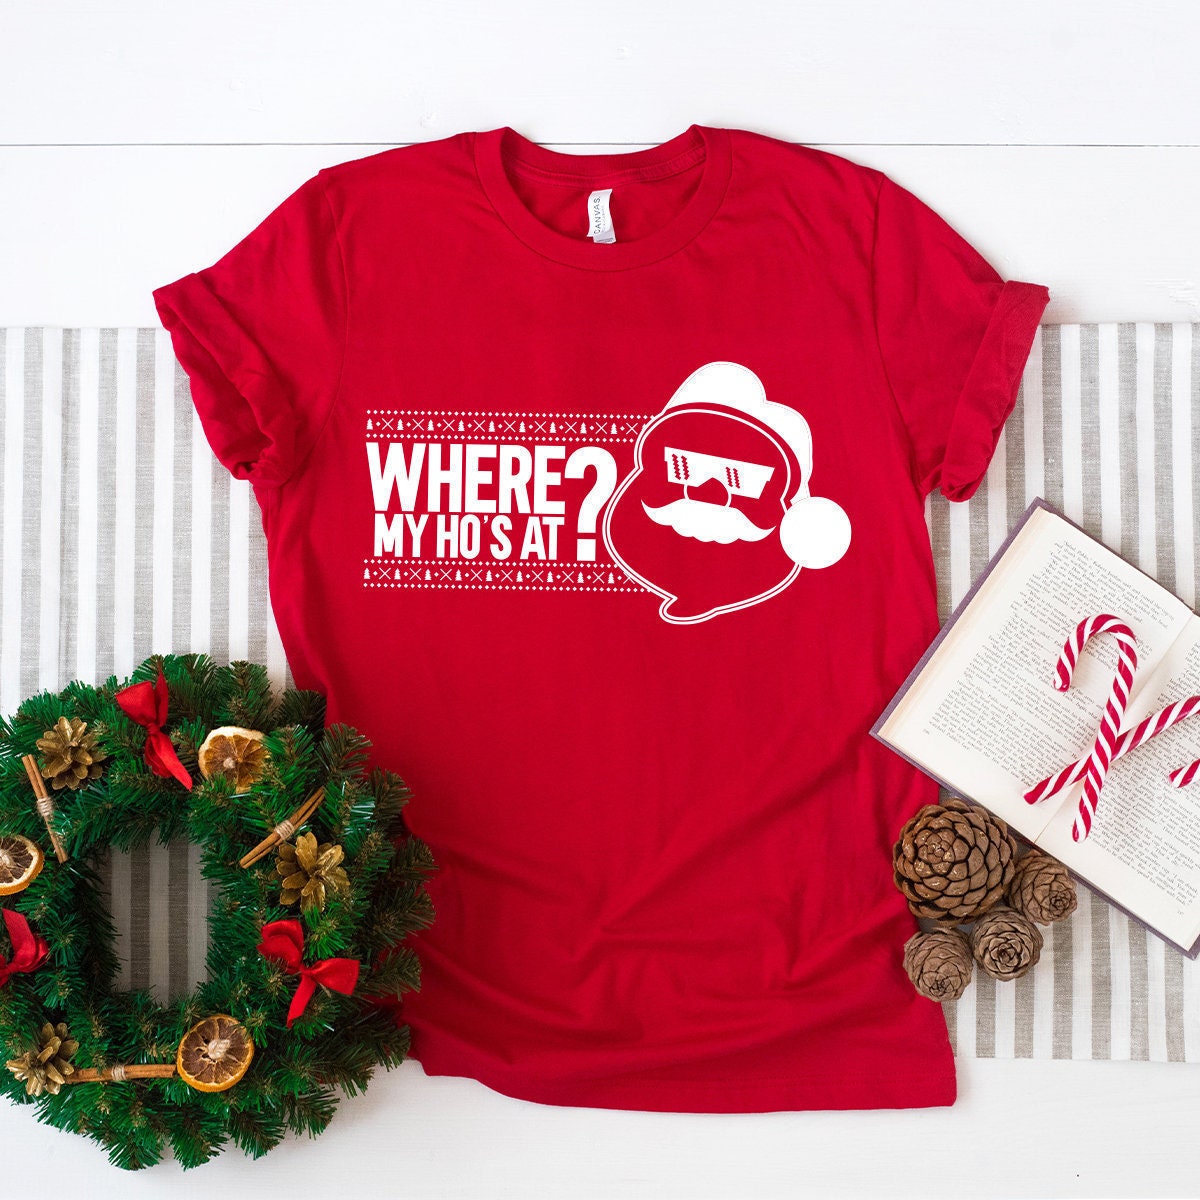 Funny Santa shirt, Christmas Holiday Shirt, Santa Gift Shirt, Santa Graphic Tee, Funny Holiday Shirt, Where My Ho's At Shirt, Xmas Shirts - Fastdeliverytees.com